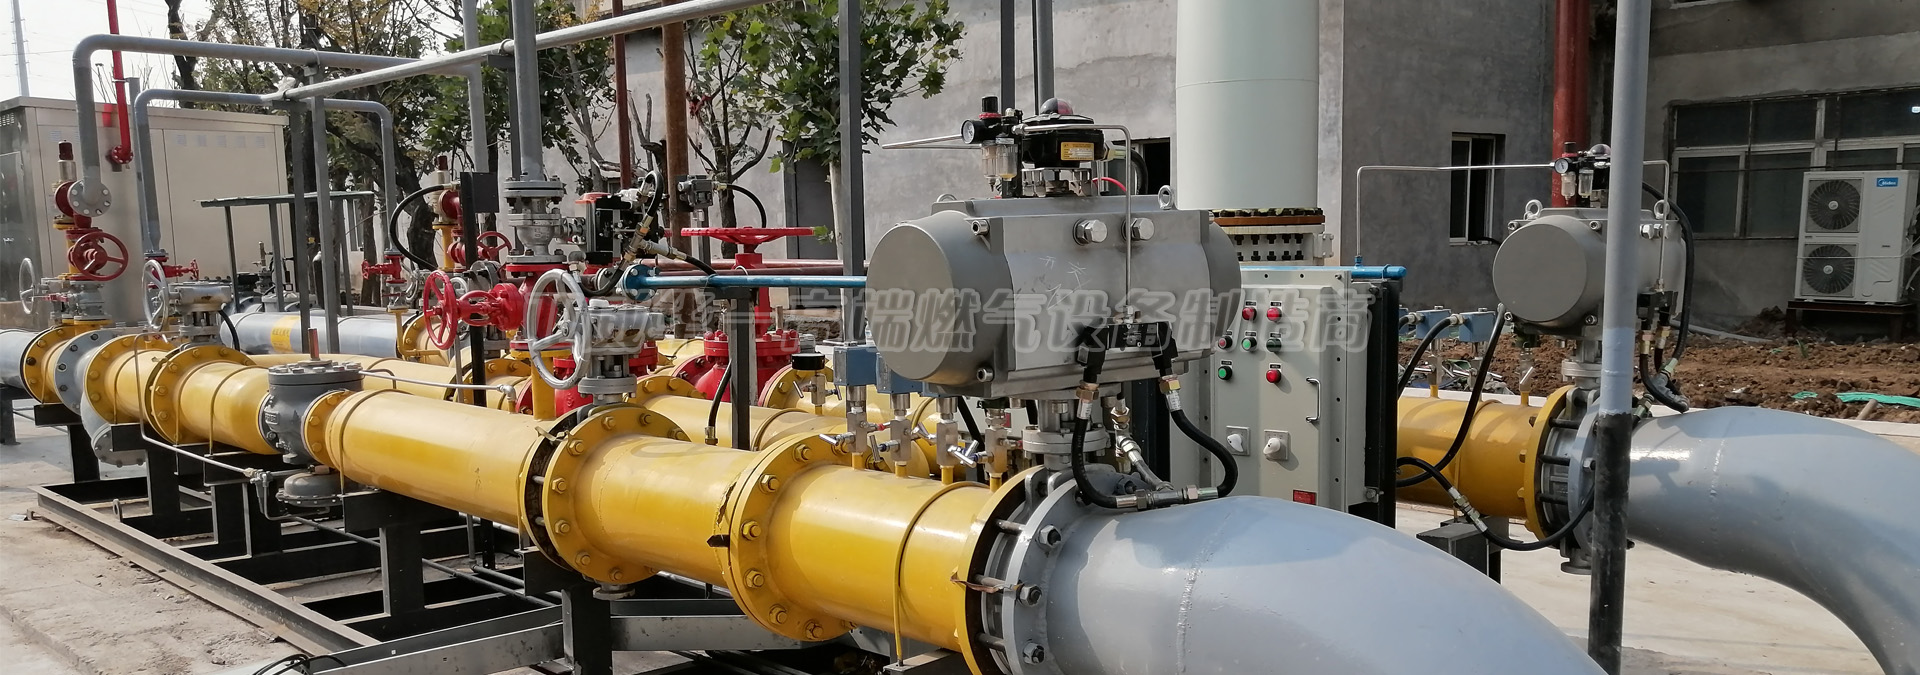 亚威华为首钢启动能源站提供天然气调压装置